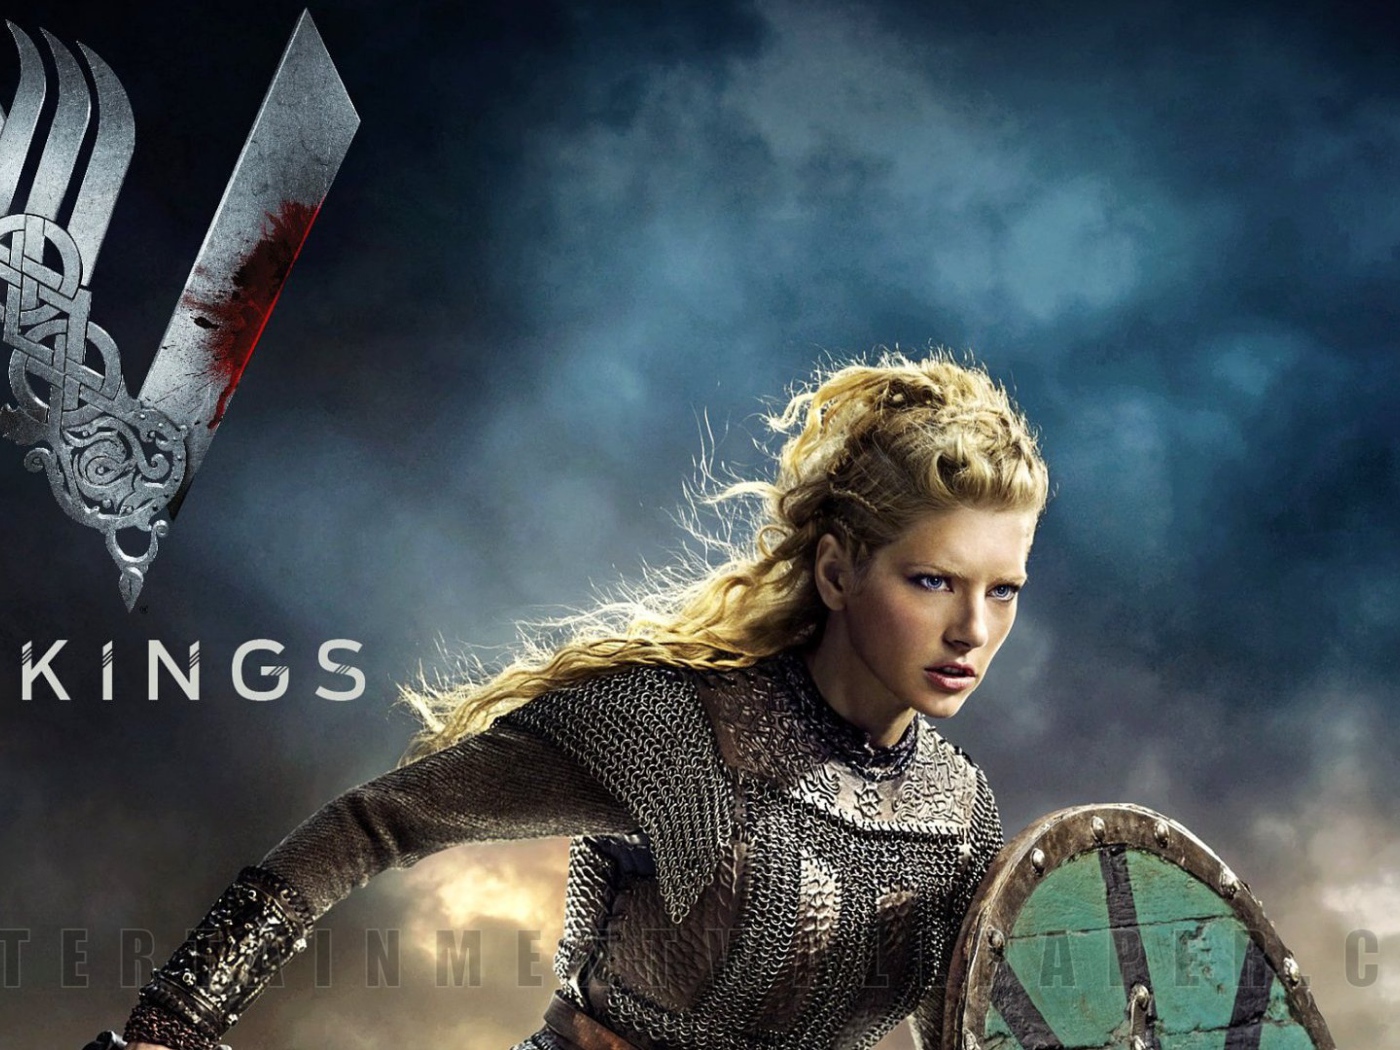 The Viking girl warrior